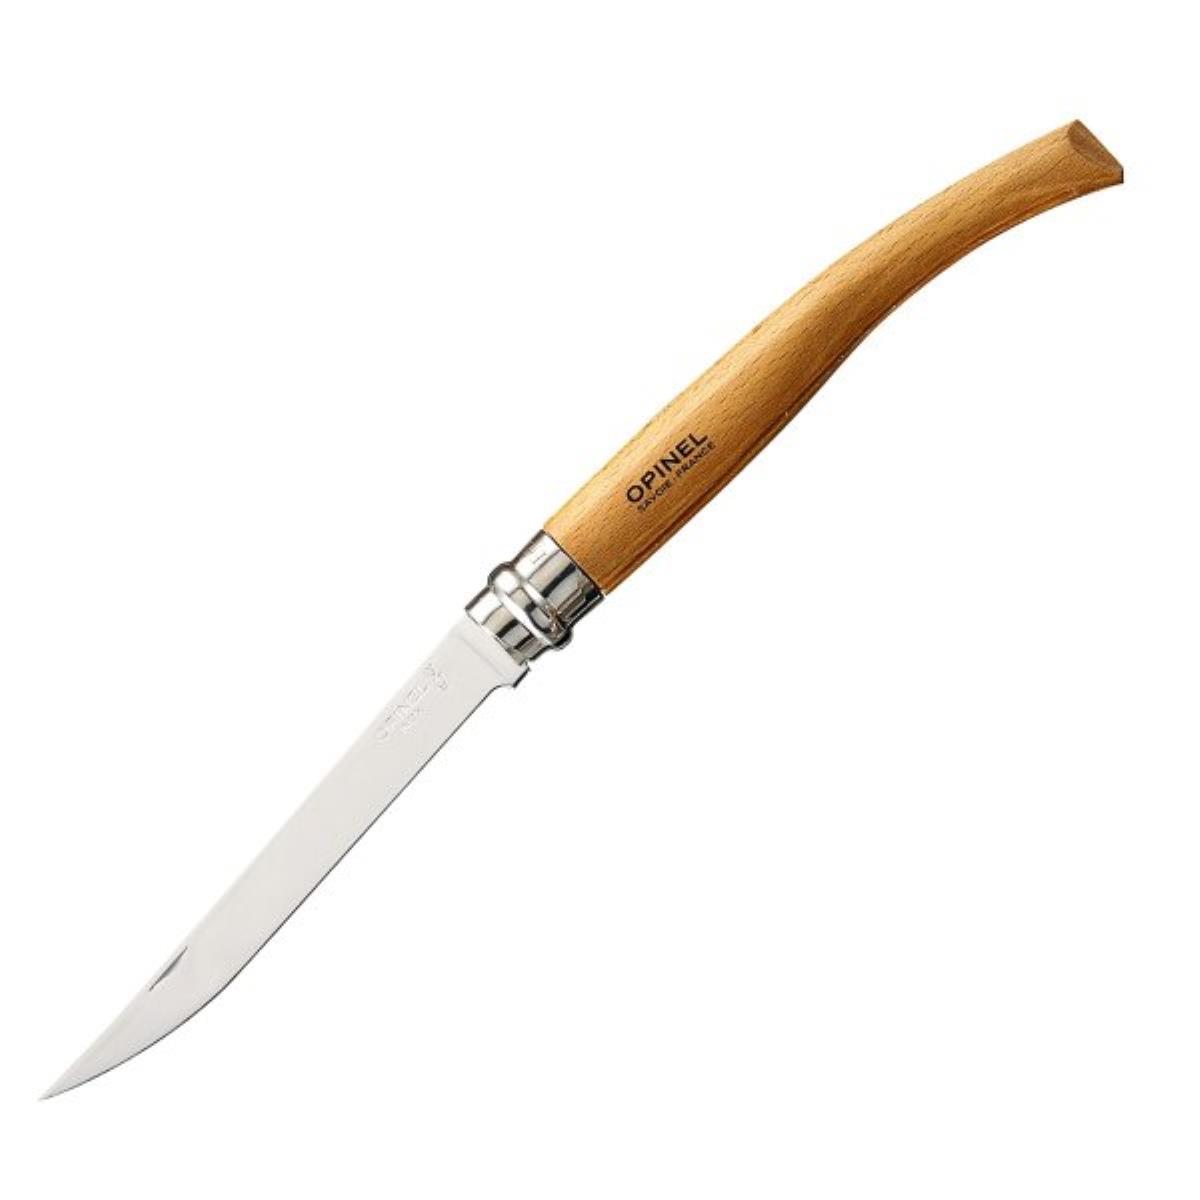 Нож 12 см филейный Effile 12 Bubinga OPINEL пинцет kuchenprofi для удаления костей из рыбы